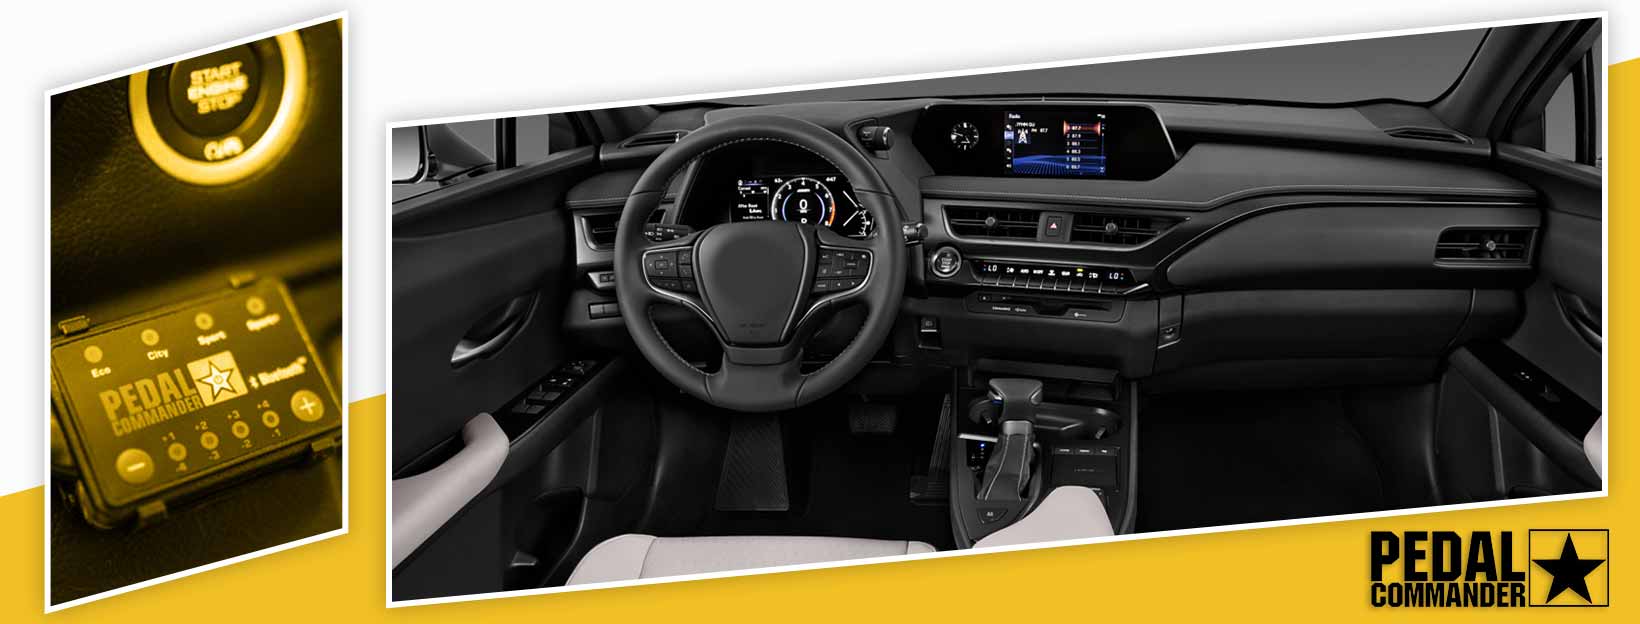 Pedal Commander for Lexus UX - interior